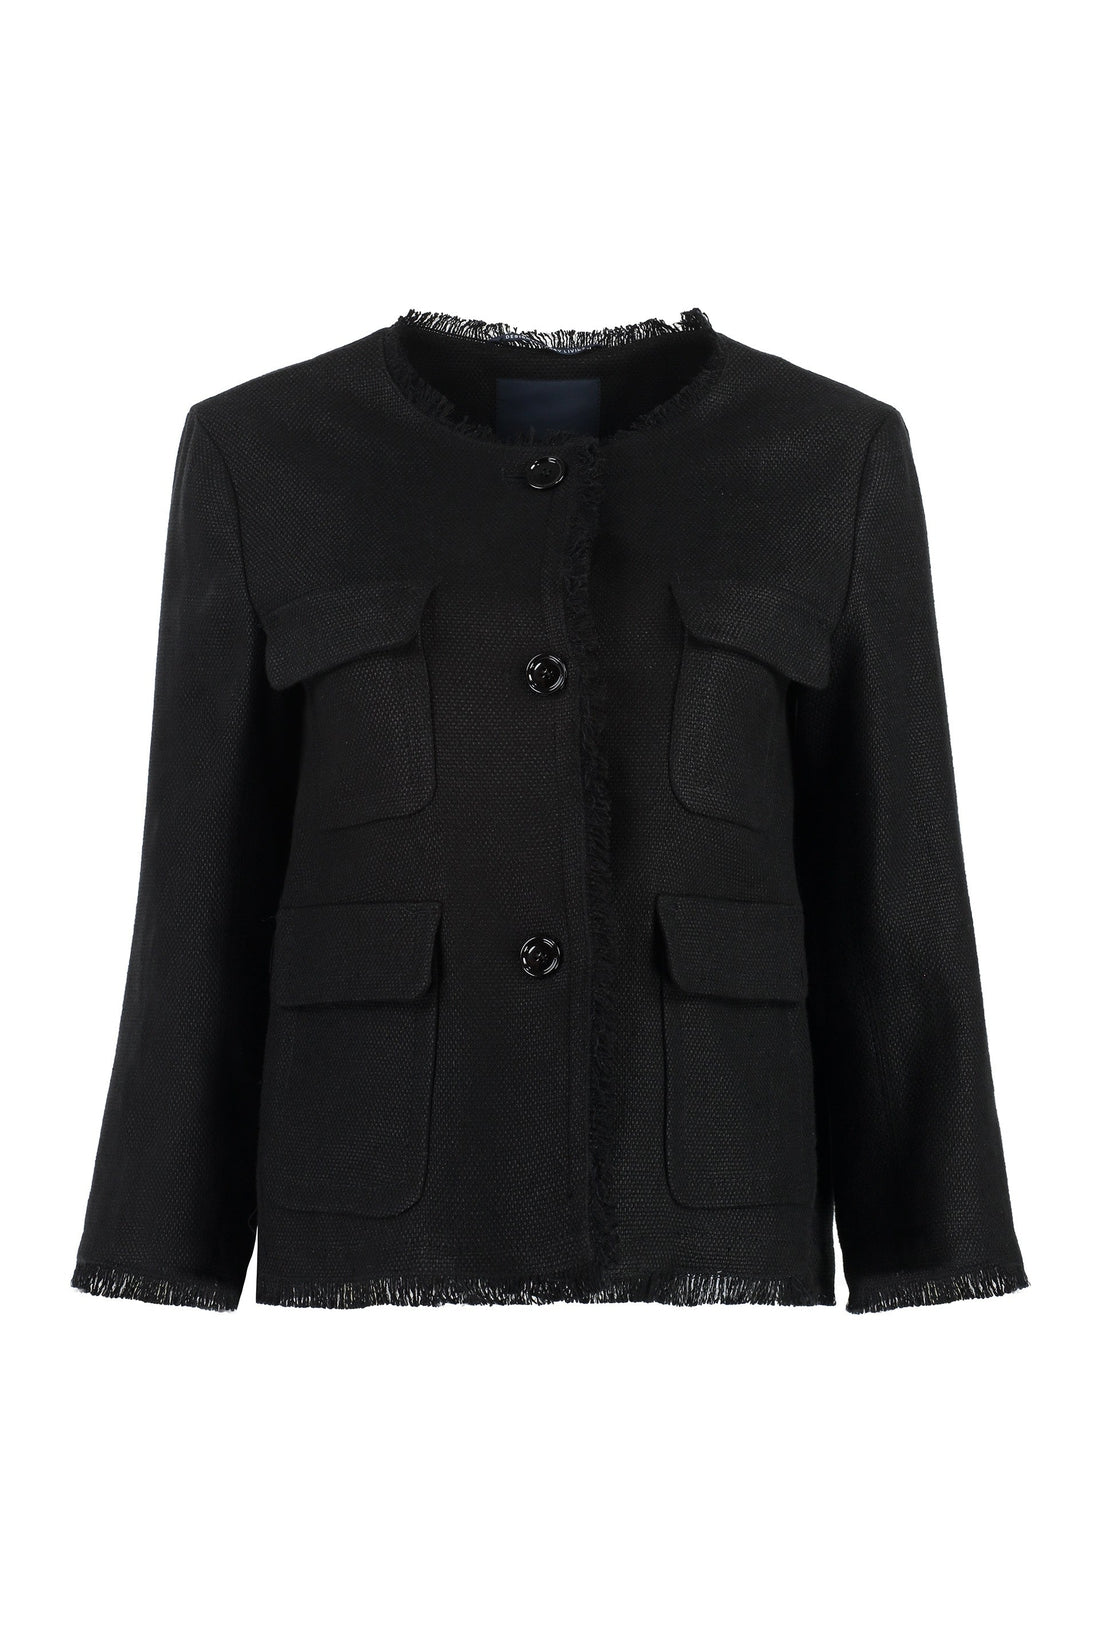 S MAX MARA-OUTLET-SALE-Andreis cotton-linen blend jacket-ARCHIVIST